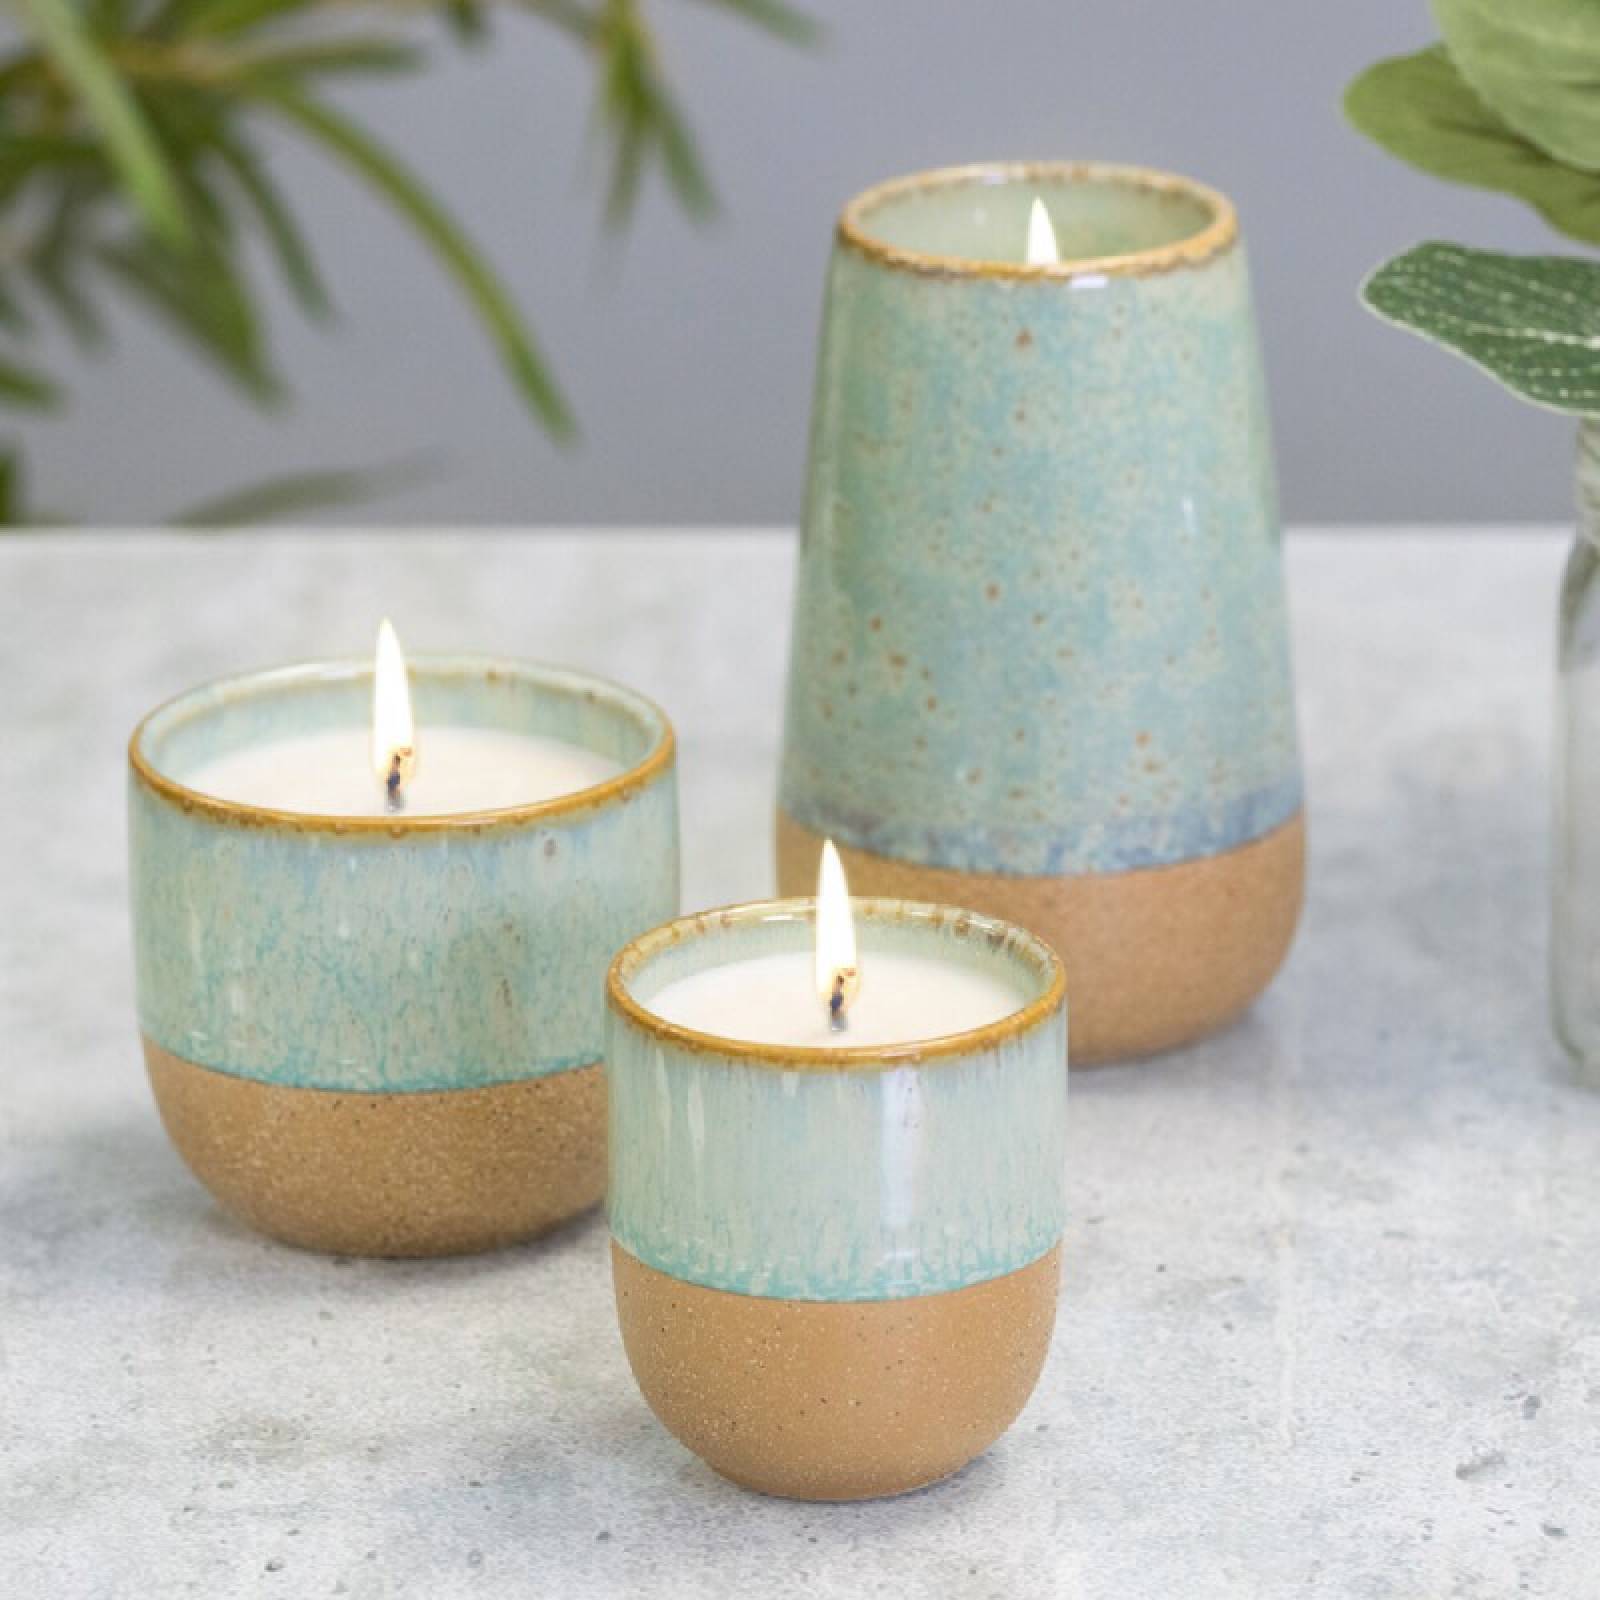 Glazed Ceramic Pot With Soy Candle - Matcha Tea & Bergamot 99g thumbnails